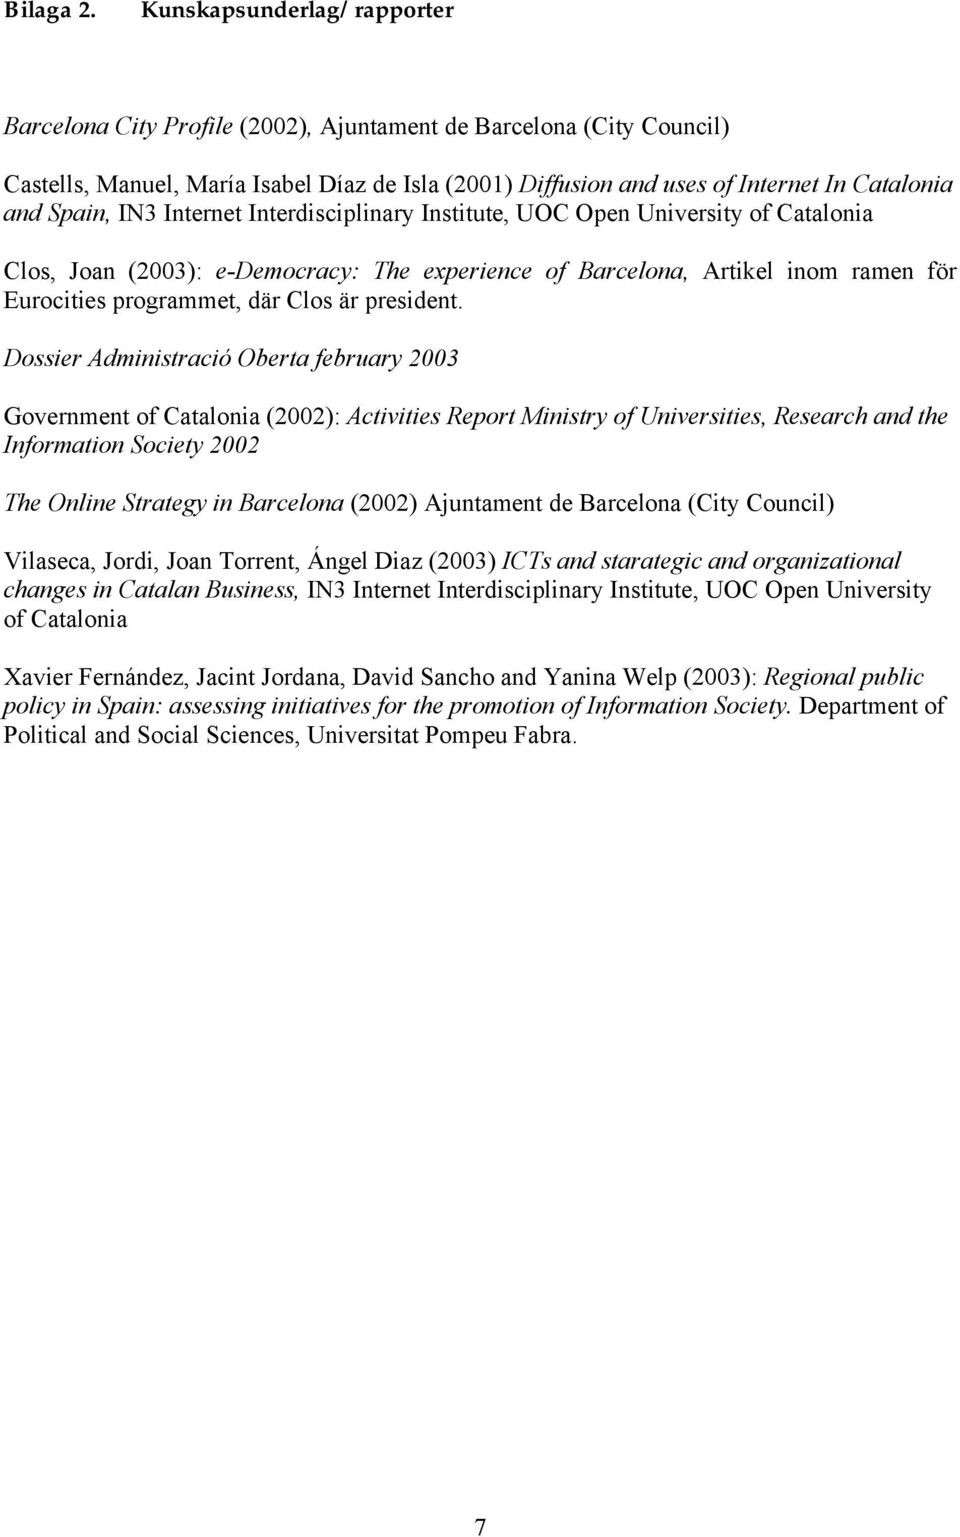 Spain, IN3 Internet Interdisciplinary Institute, UOC Open University of Catalonia Clos, Joan (2003): e-democracy: The experience of Barcelona, Artikel inom ramen för Eurocities programmet, där Clos